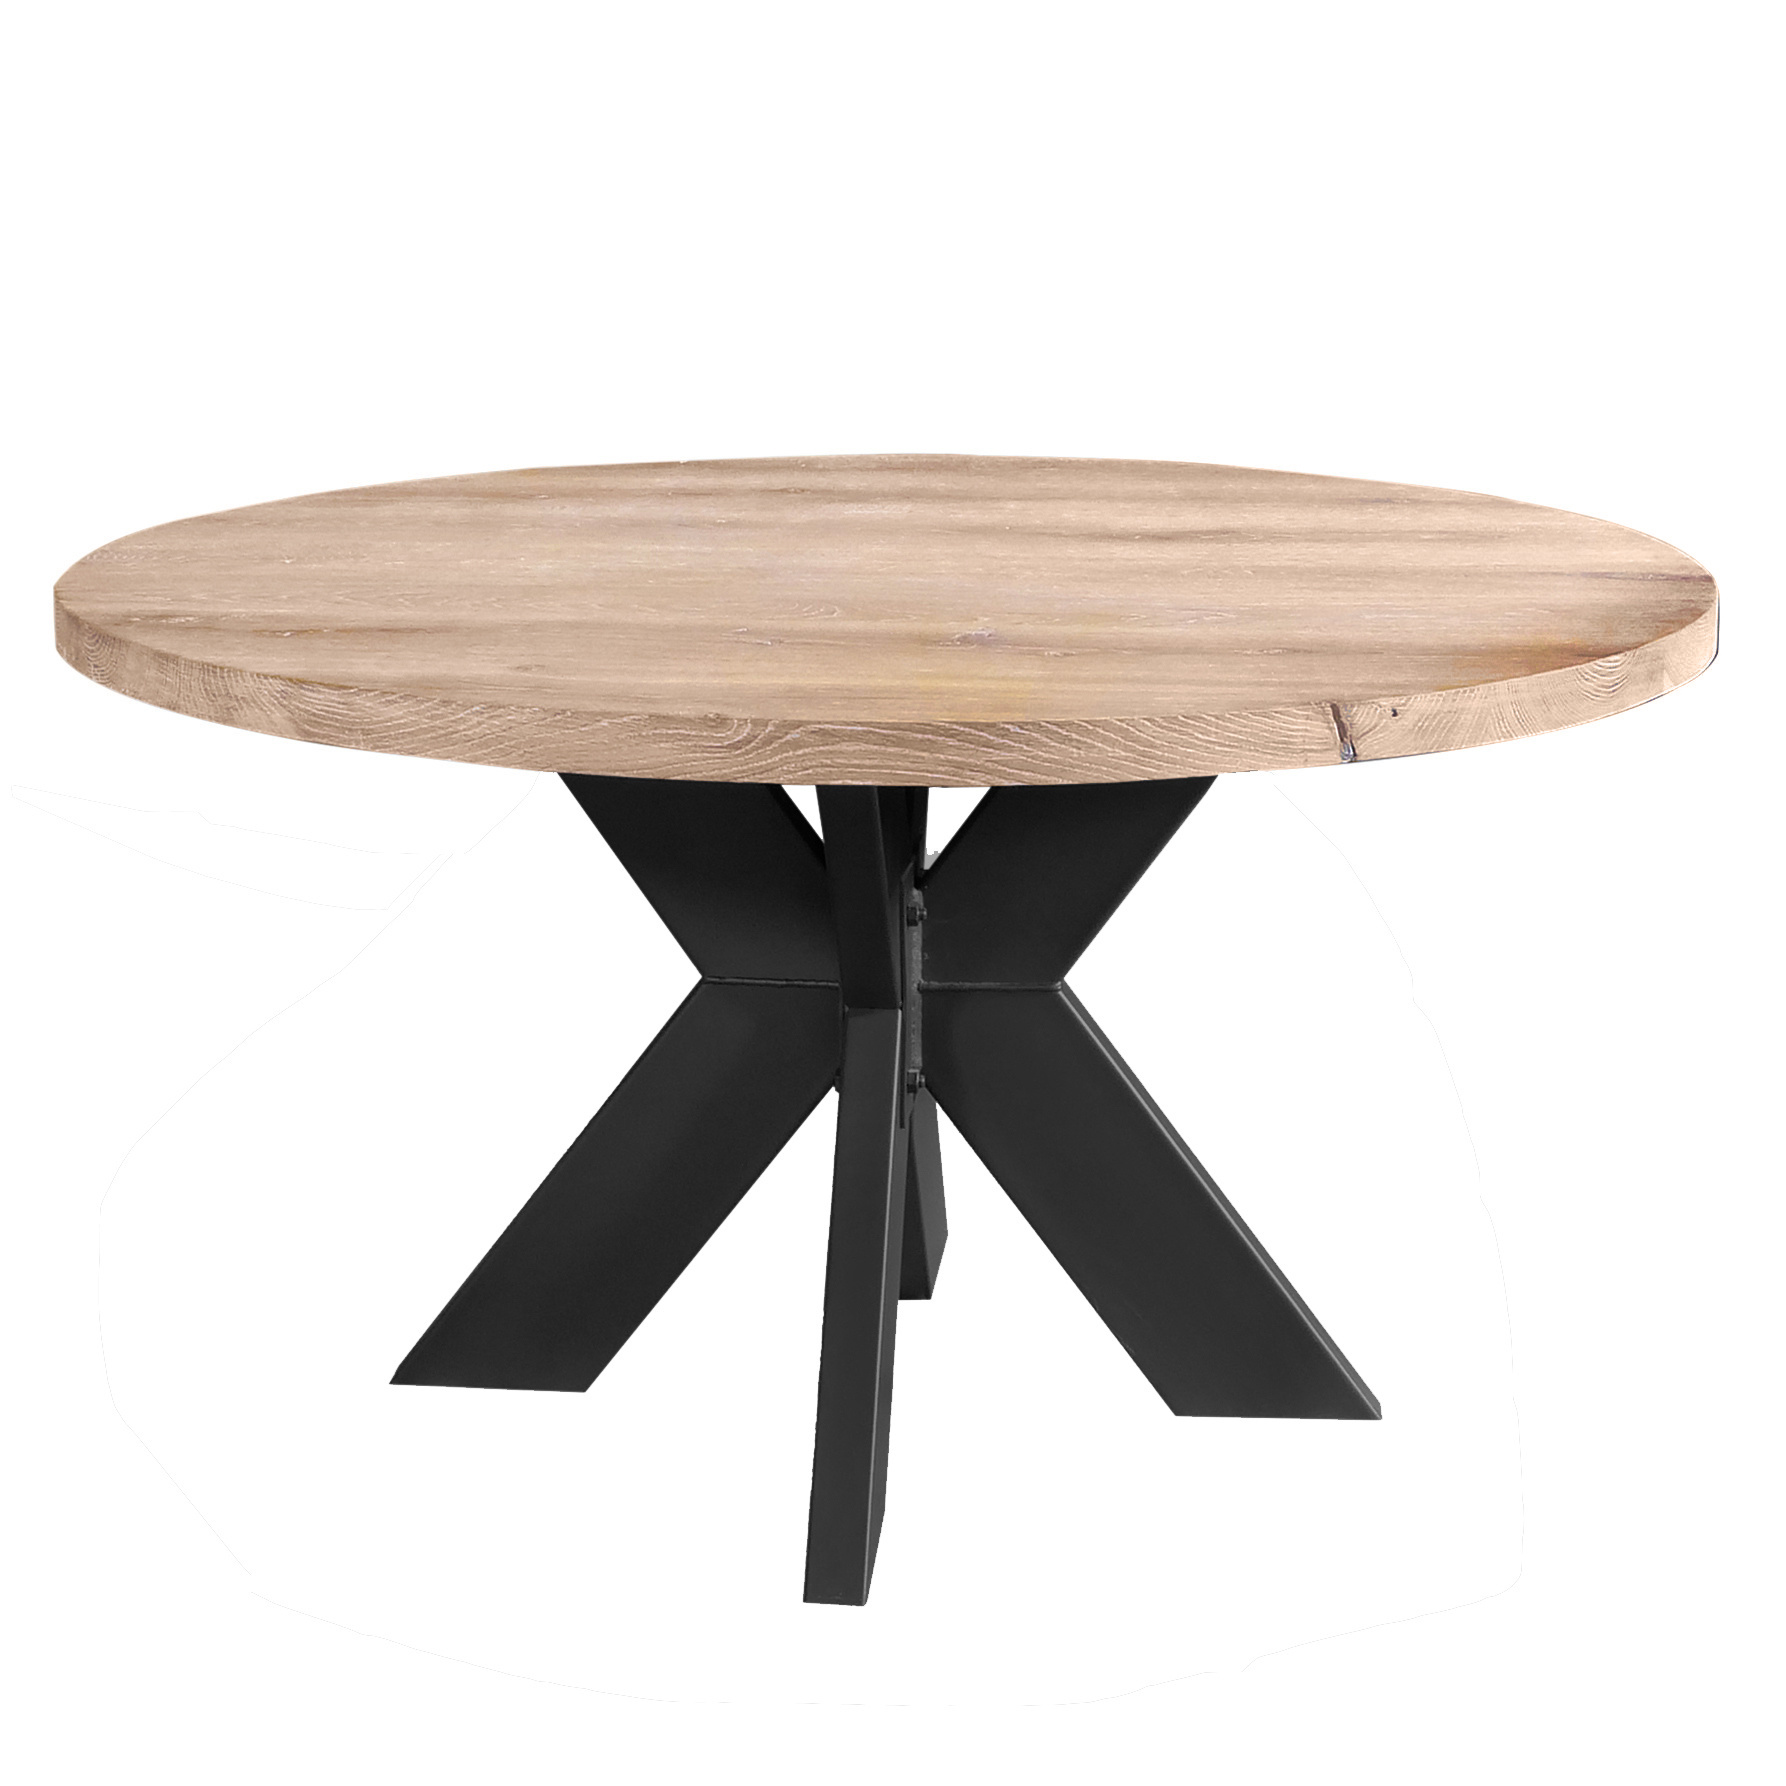  Tischplatte Eiche rund nach Maß - 8 cm dick (2-lagig) - Eichenholz A-Qualität - Durchmesser: 30 - 180 cm - Eiche Tischplatte rund massiv - verleimt & künstlich getrocknet (HF 8-12%)